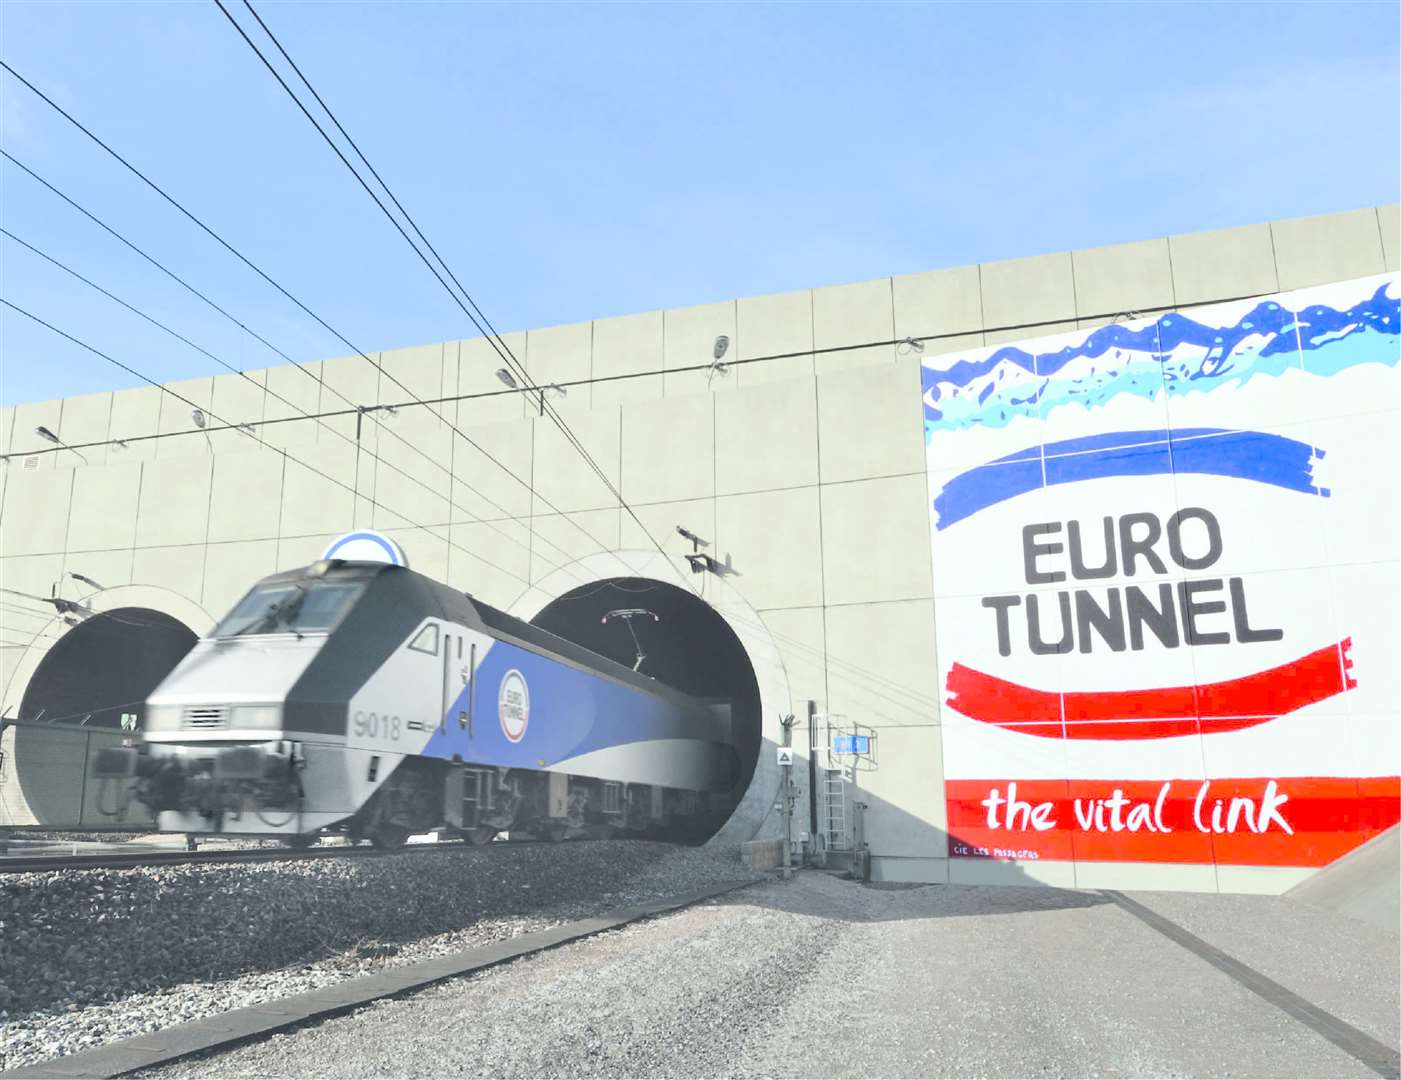 Eurotunnel parent Getlink has new HR director